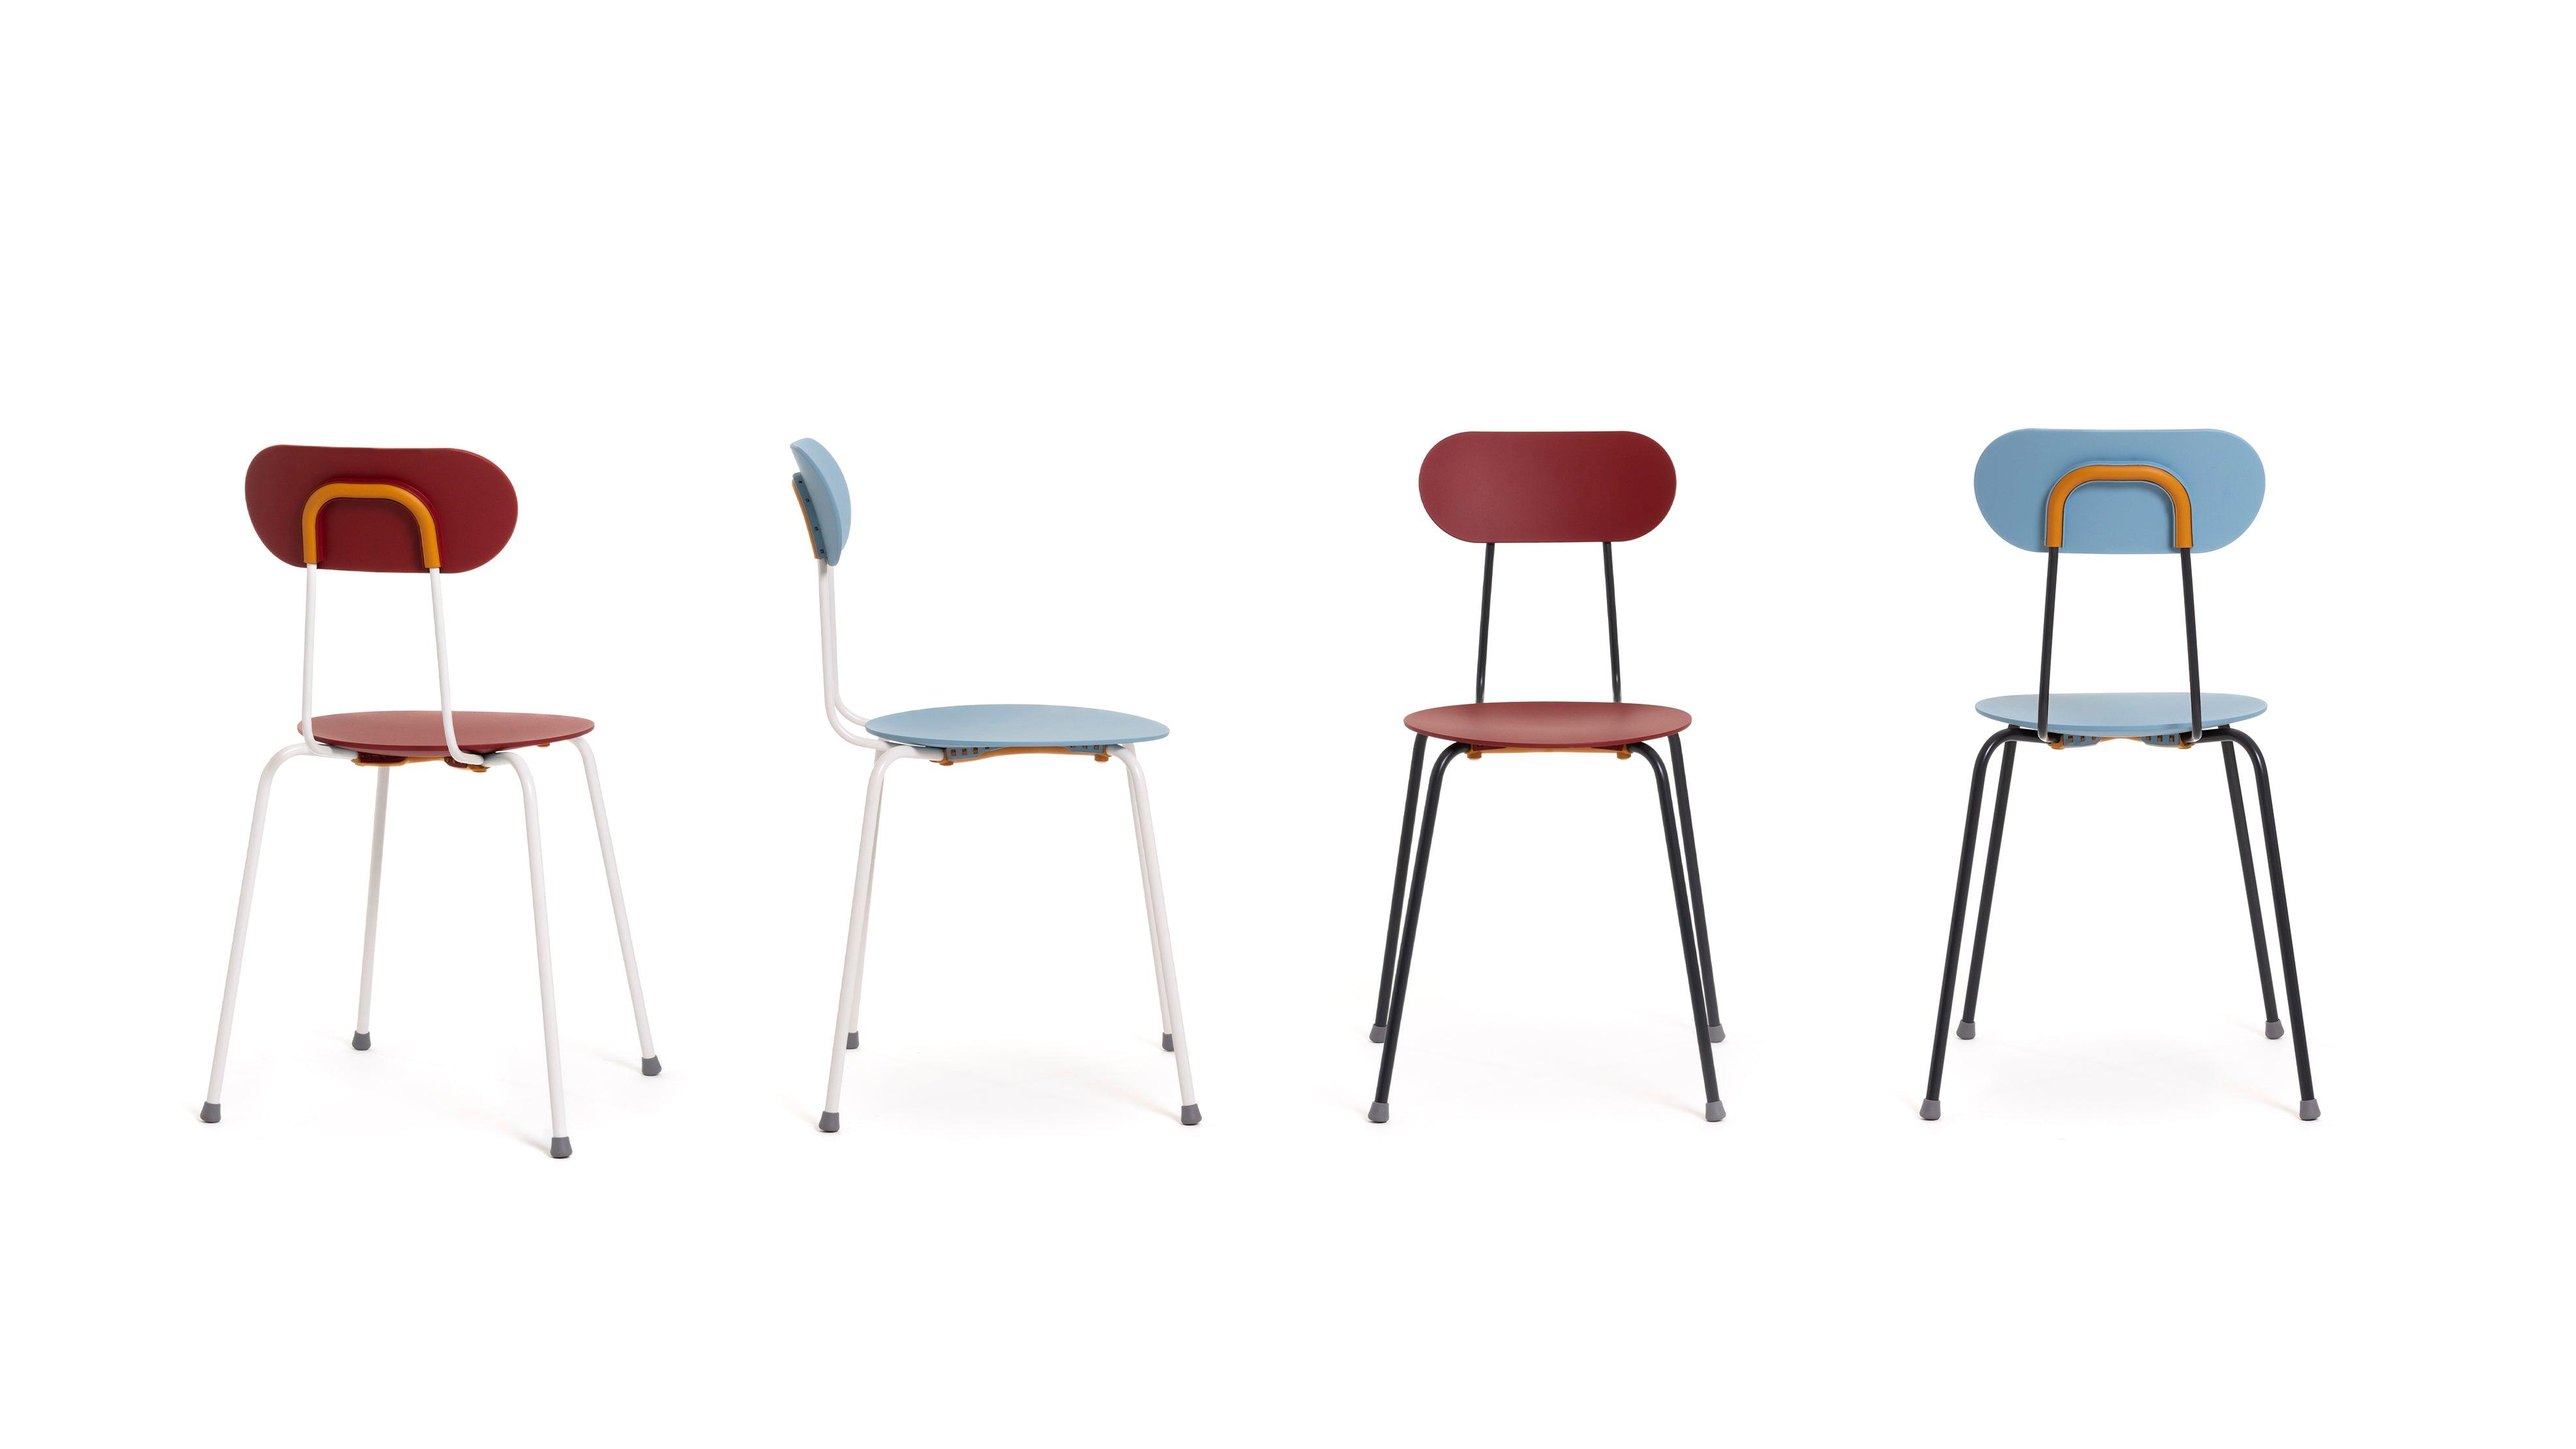 Krzesło MARIOLINA niebieski z białymi nogami, Magis, Eye on Design